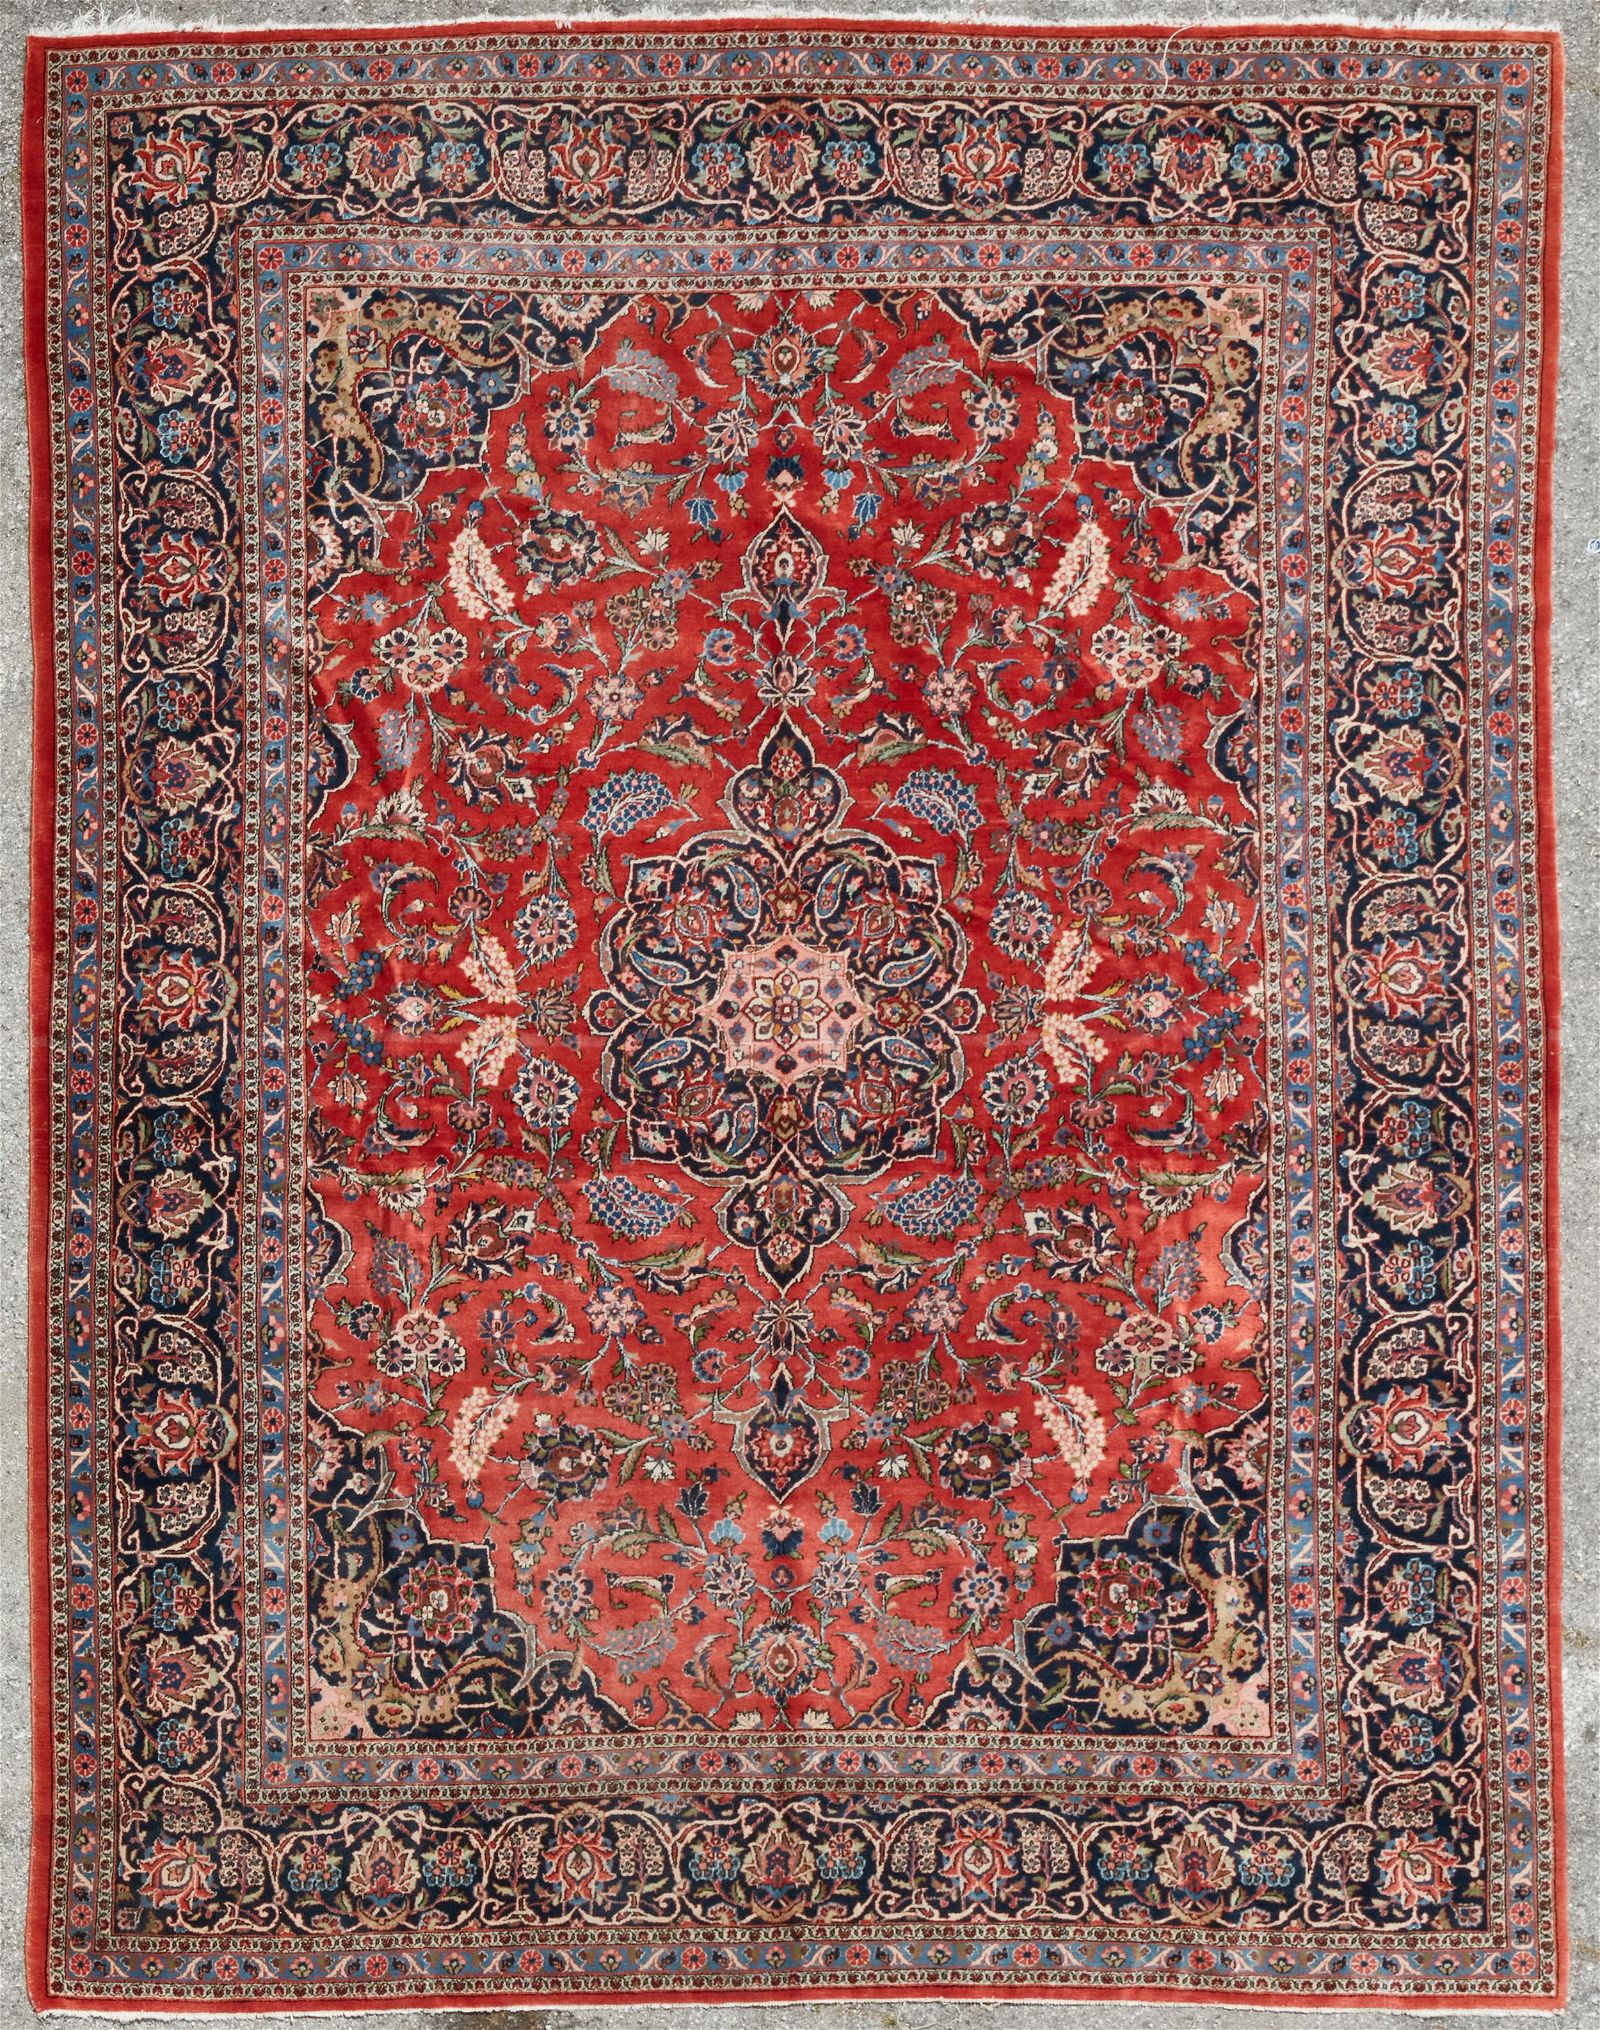 A KASHAN CARPETA Kashan carpetapproximately 2fb2708